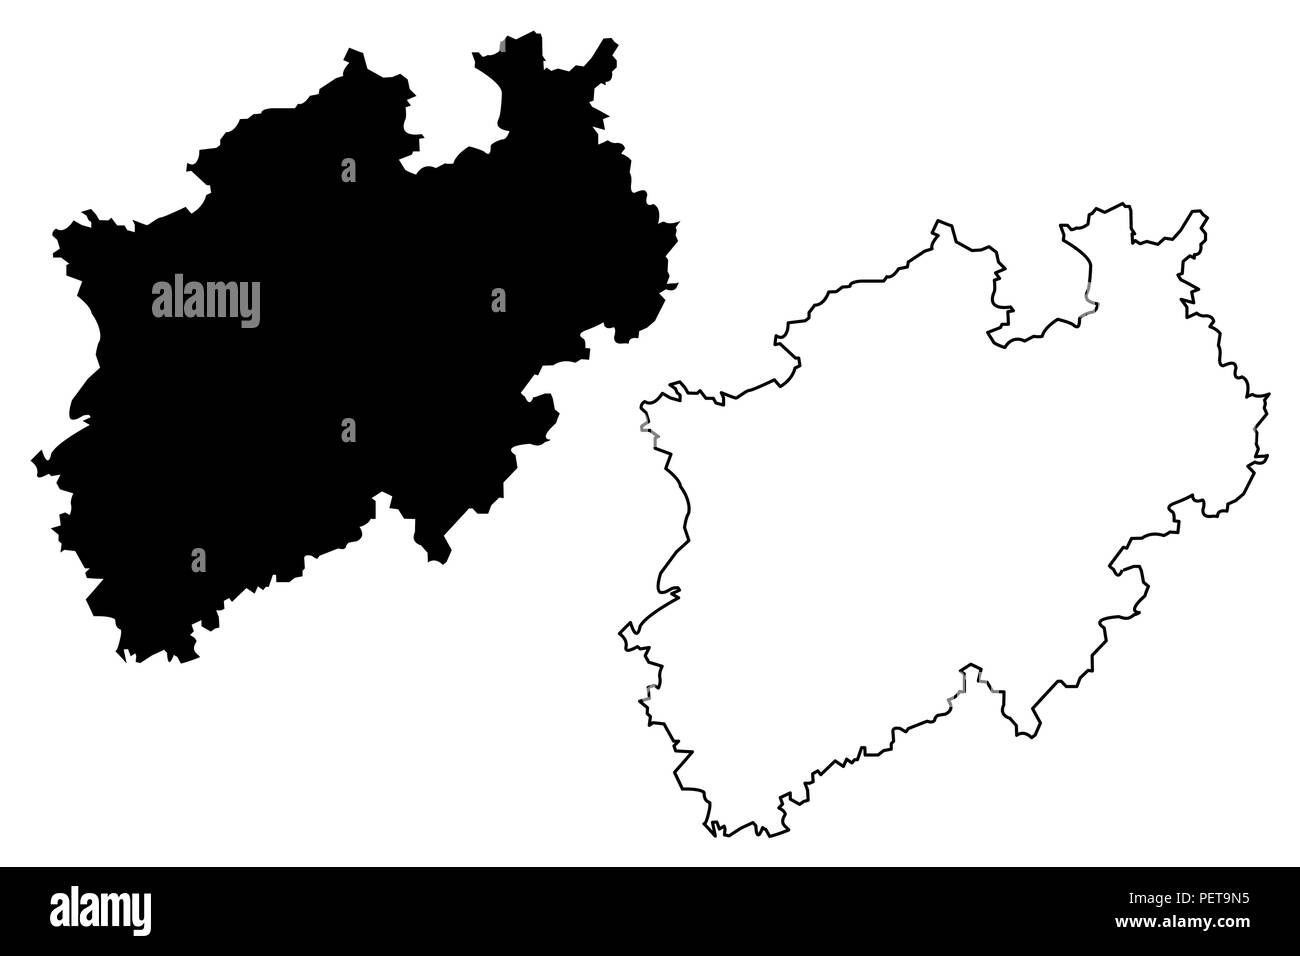 Nordrhein-westfalen (Bundesrepublik Deutschland, Bundesland der Bundesrepublik Deutschland, NRW) Karte Vektor-illustration, kritzeln Skizze Nordrhein-westfalen Karte Stock Vektor